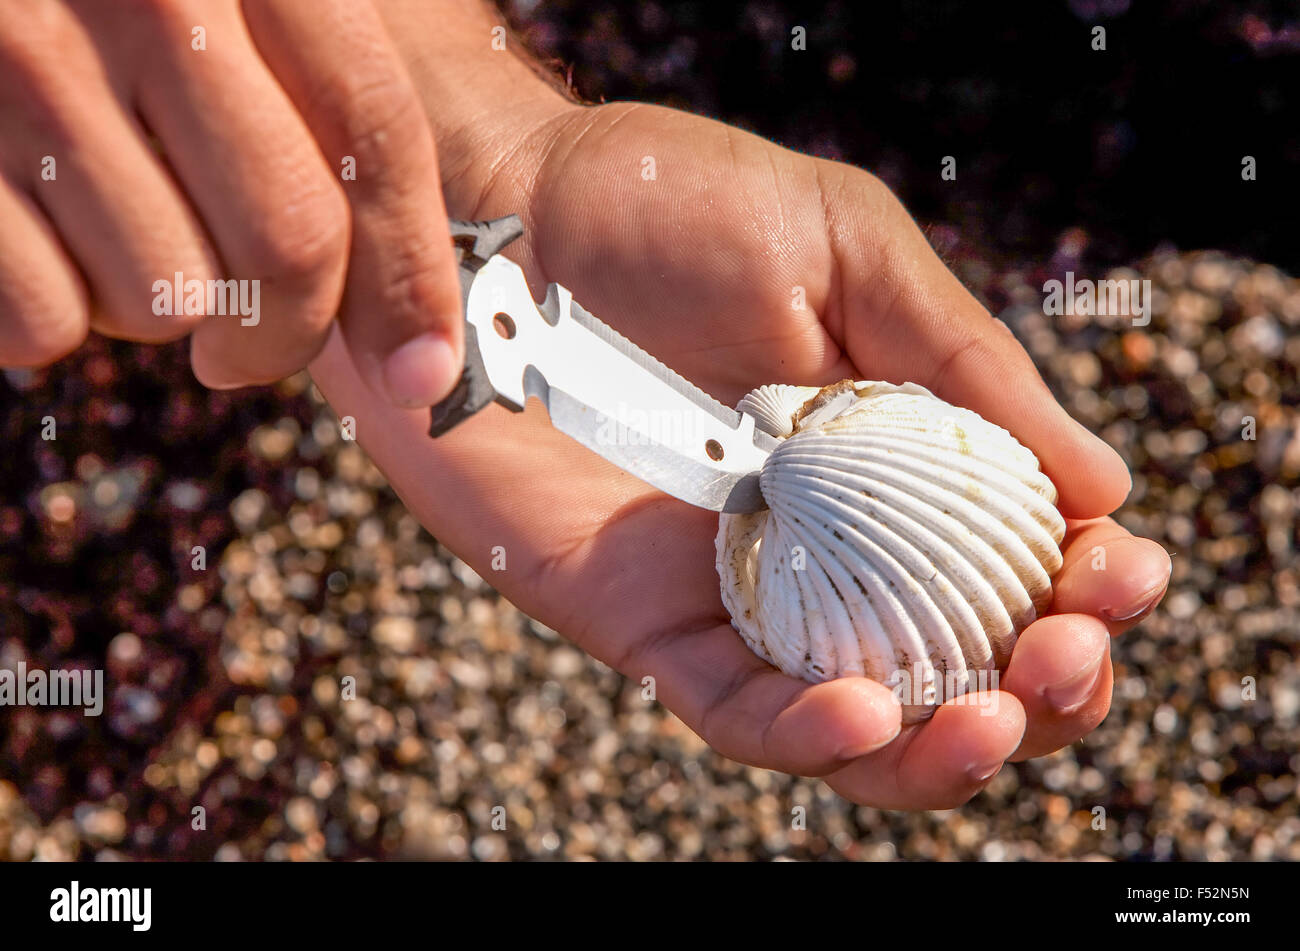 Männliche Hand Öffnen einer Auster mit einem Messer auf der Suche nach  Perlen Stockfotografie - Alamy